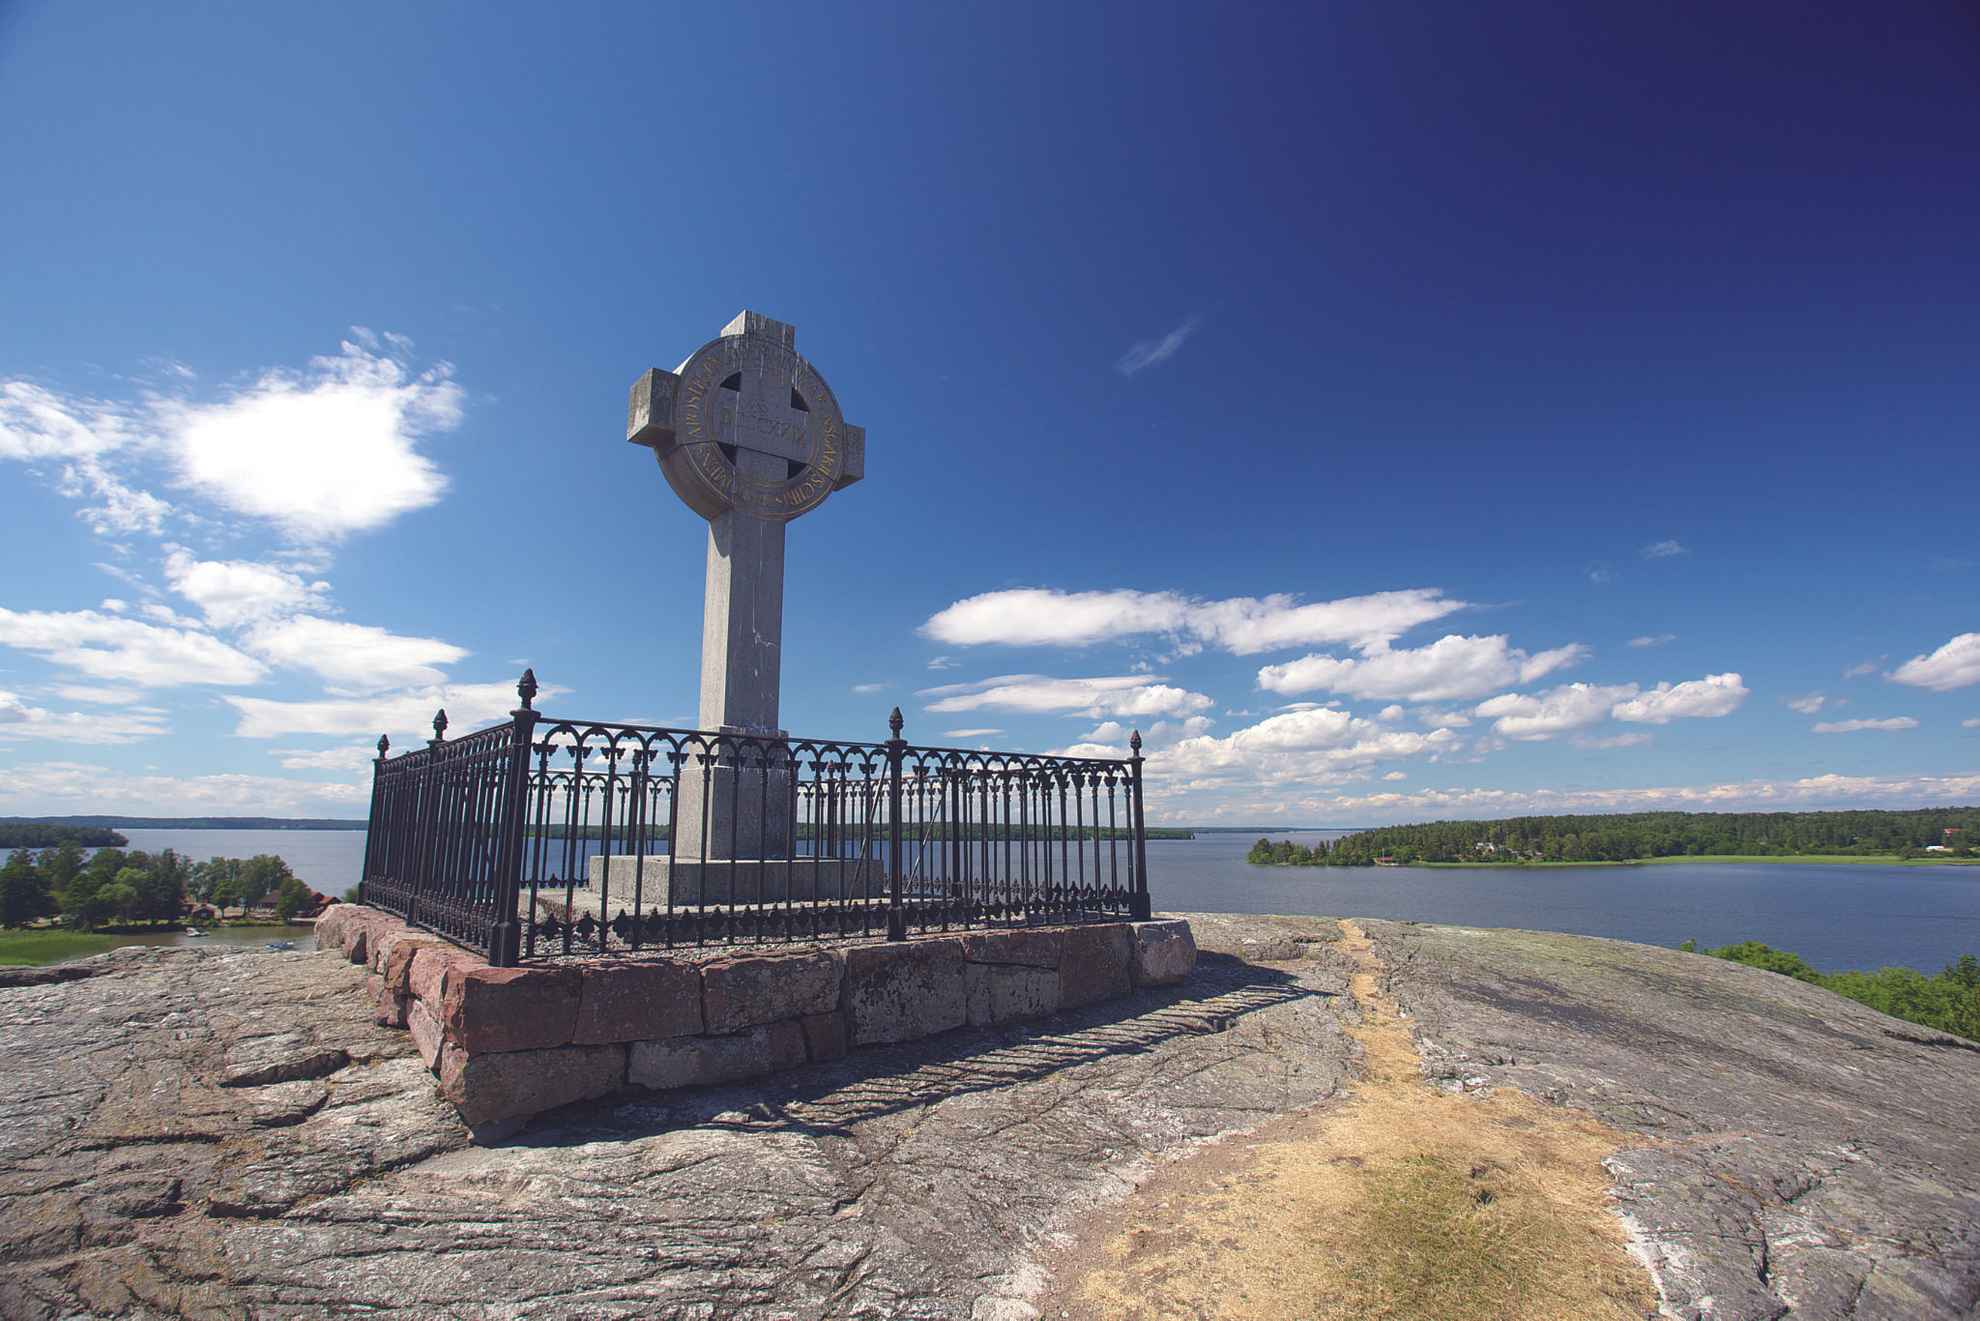 La croix d'Ansgar se dresse au sommet d'une falaise. On aperçoit en arrière-plan, le lac Mälaren, des îles et un ciel bleu.